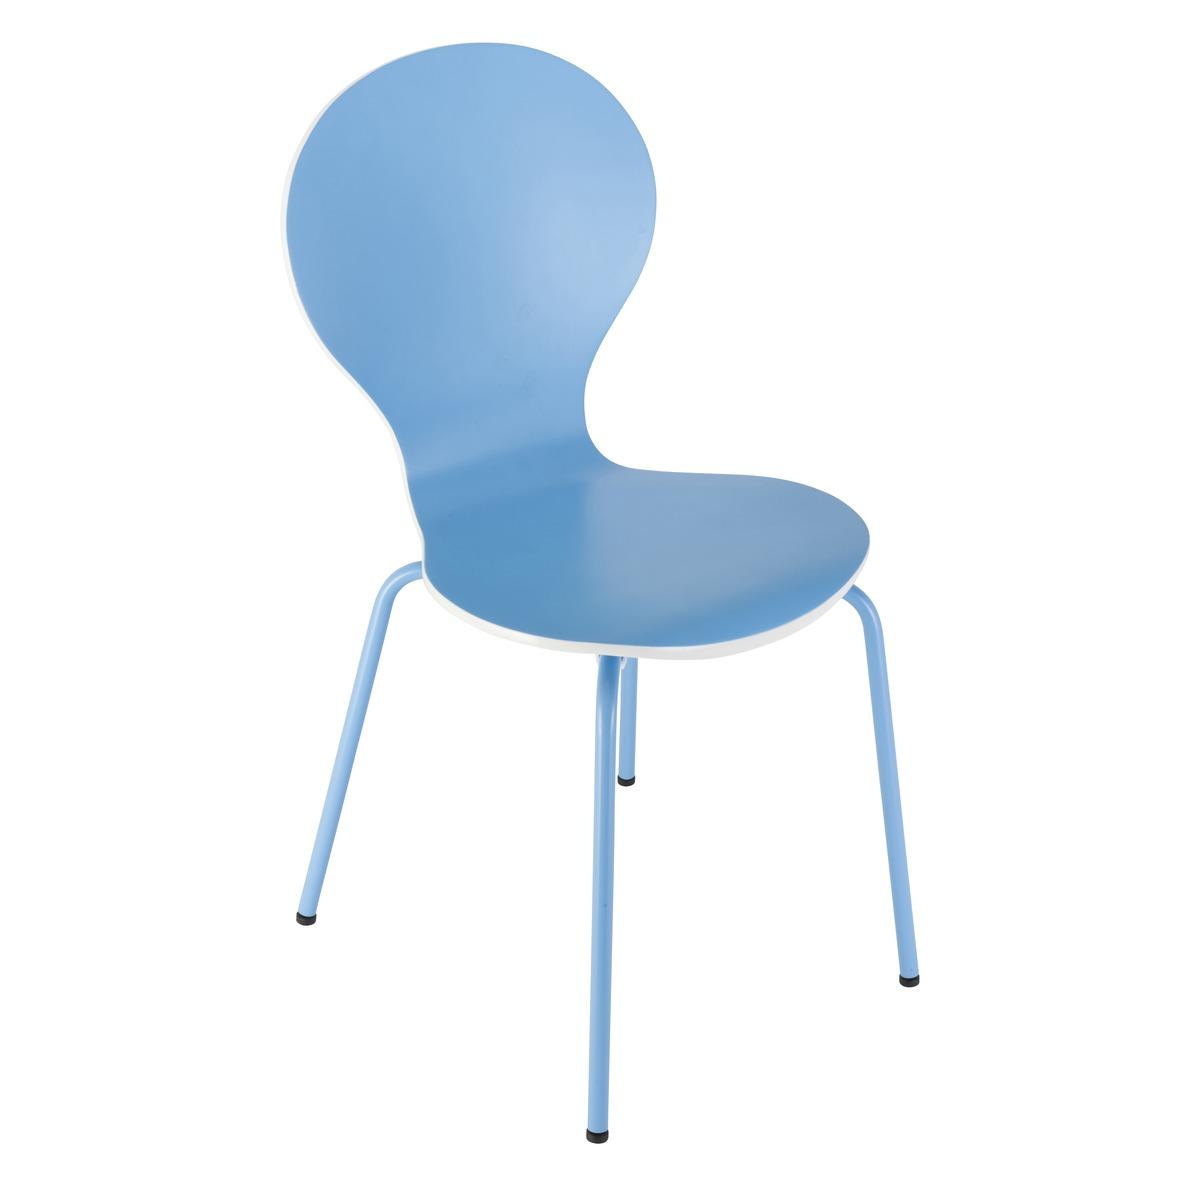 Chaise bonbon - 55 x 46 x H 87 cm - Bleu